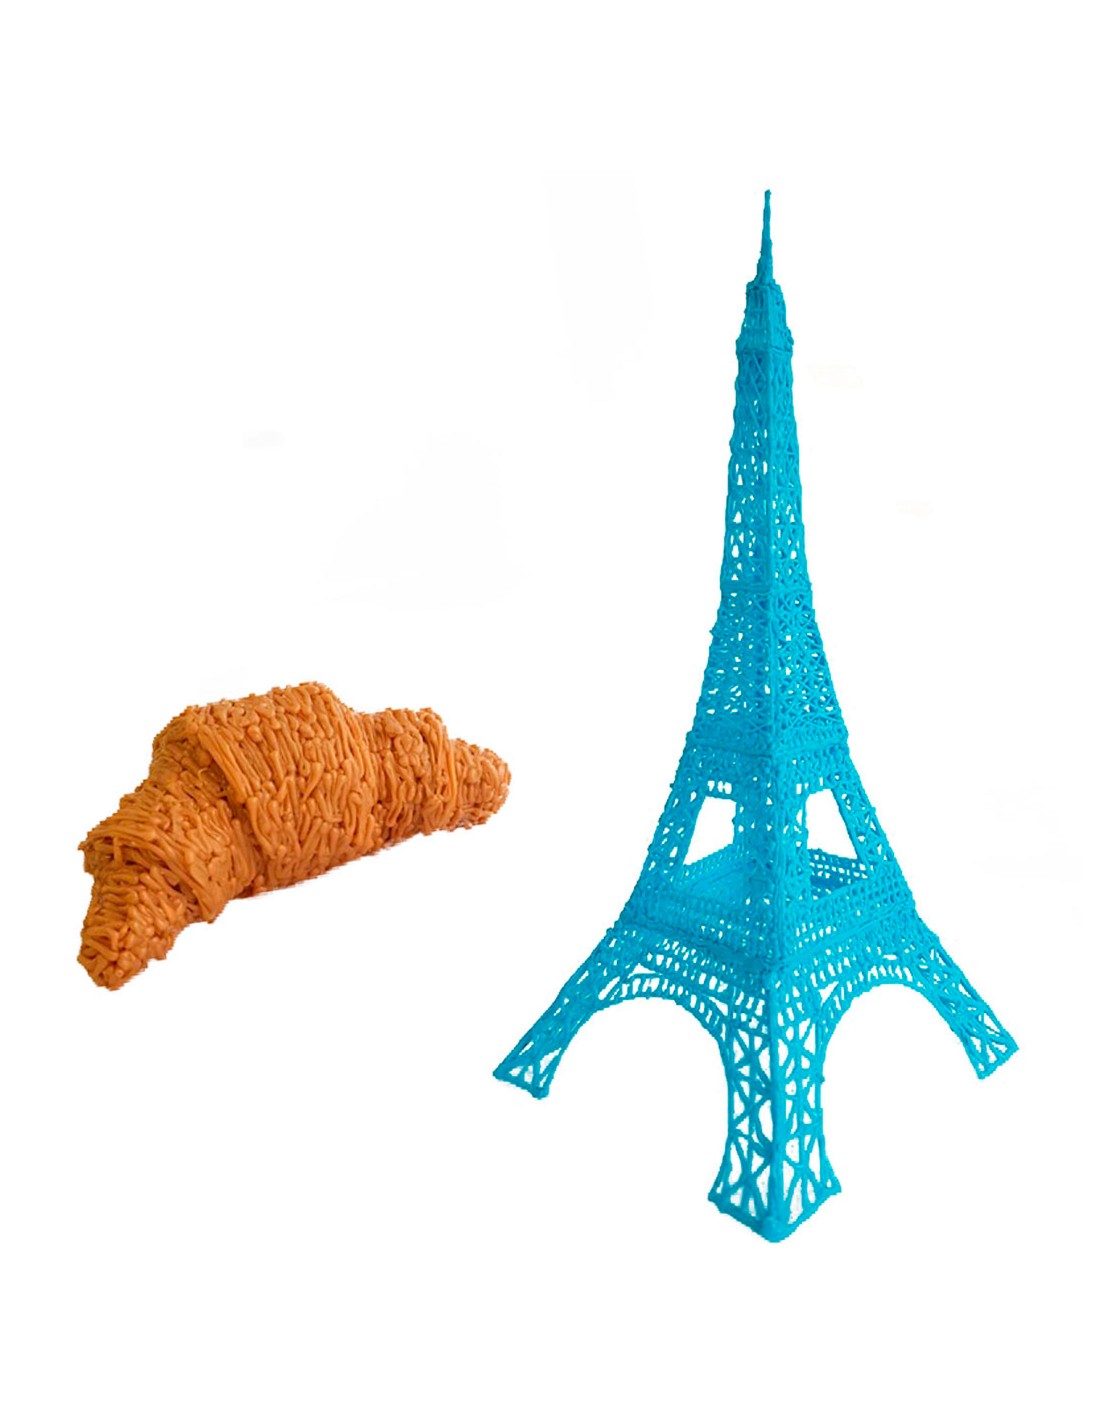 3D Pen Eiffel Tower Template